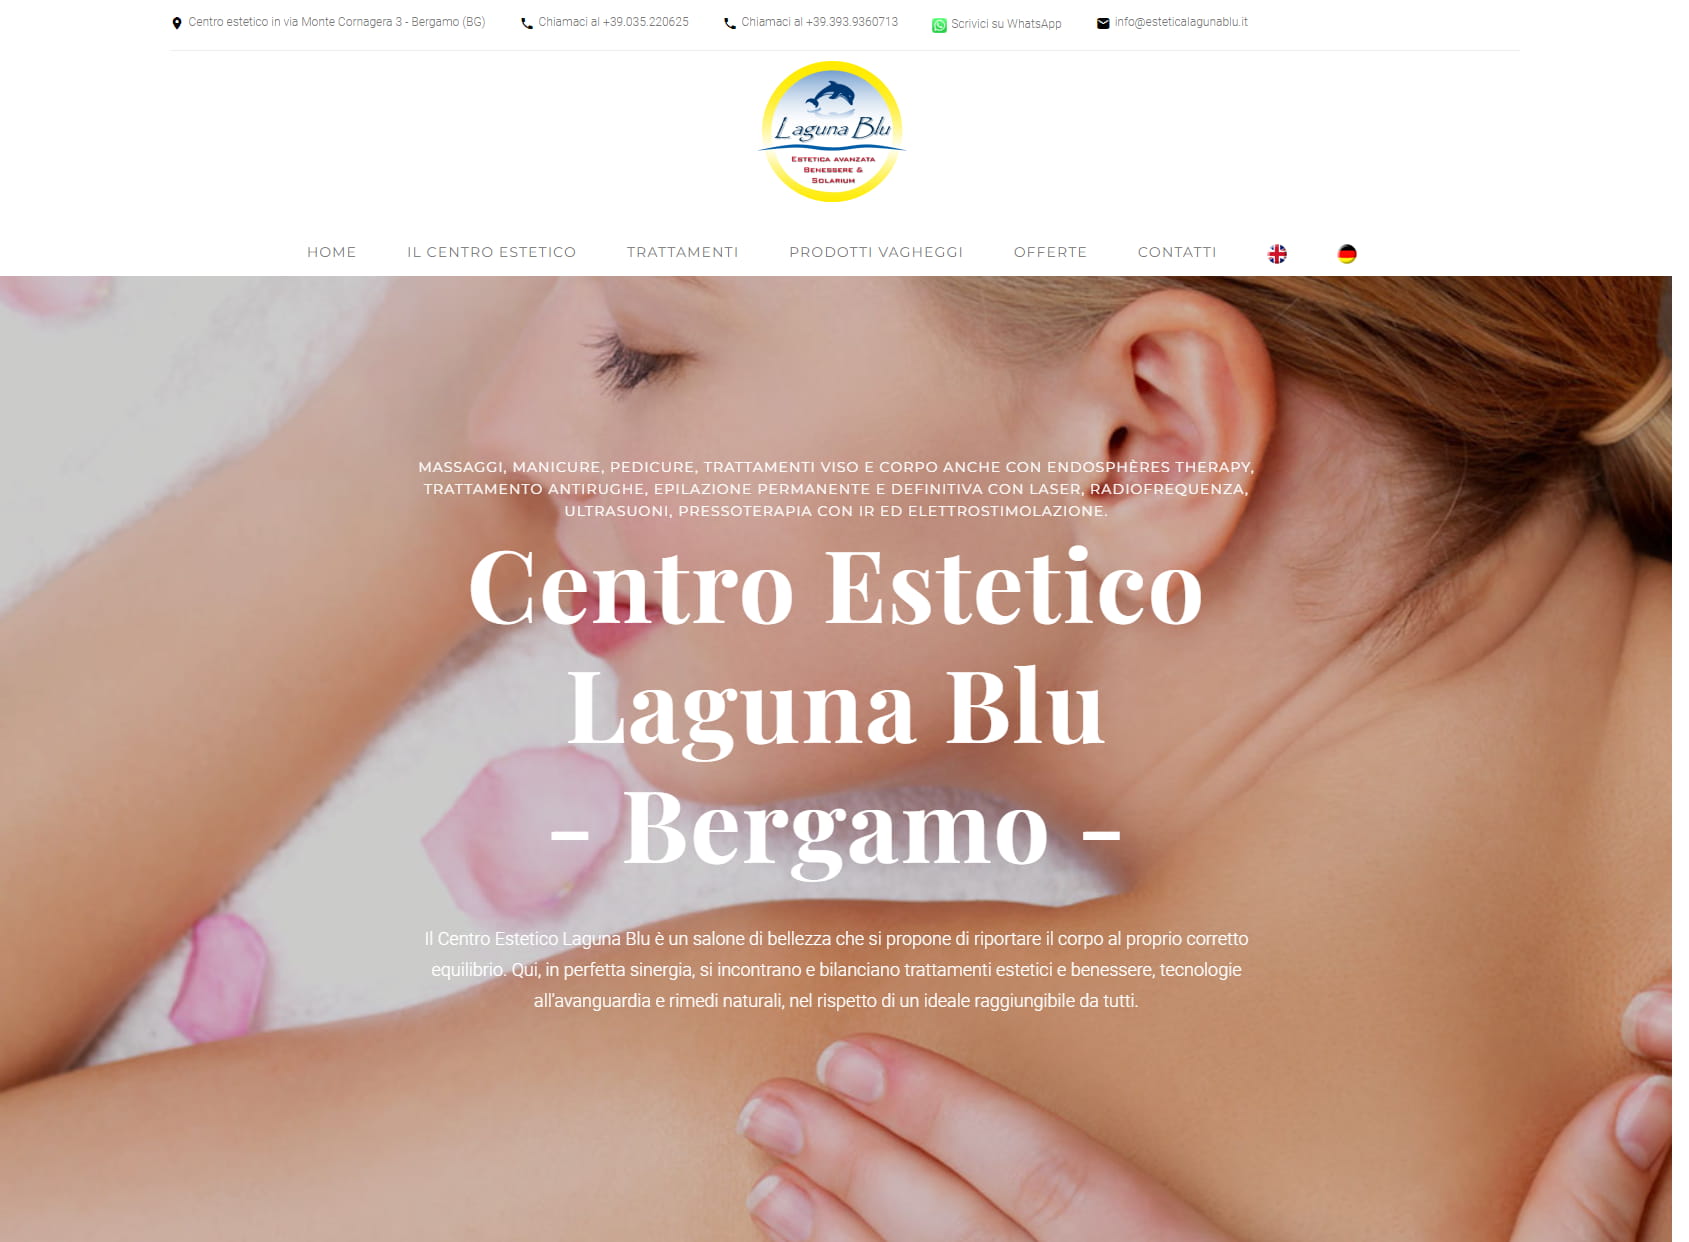 Centro Estetico Laguna Blu Epilazione permanente e definitiva con Laser a Diodo Trattamenti modellanti viso e corpo Bergamo